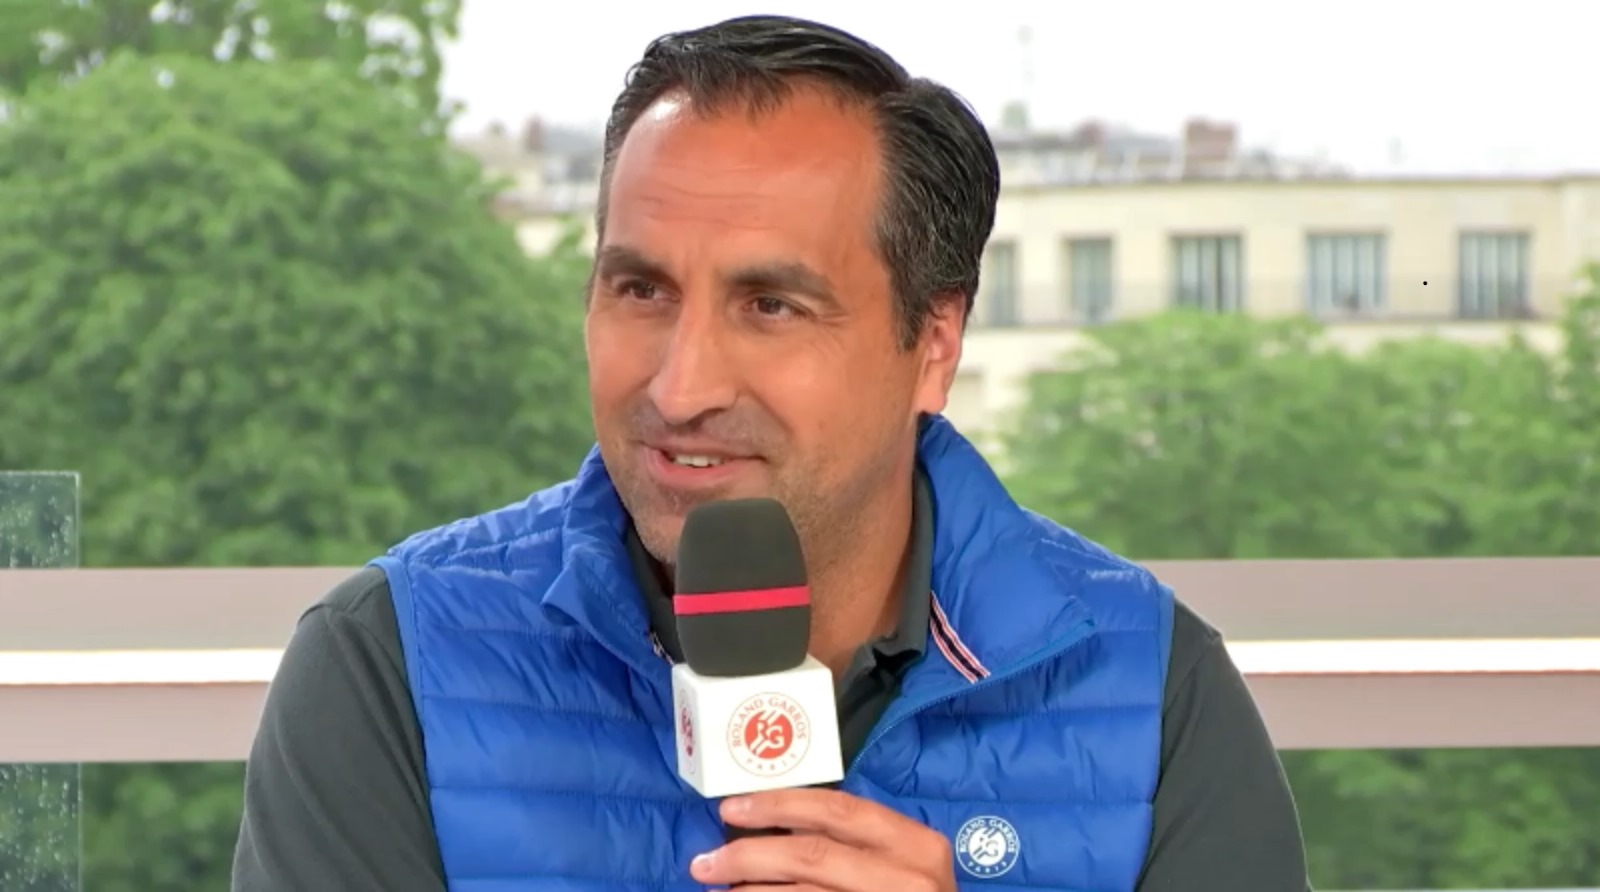 Alexandre Soulié: „300 Lizenznehmer padel im Angers Tennis Club!“